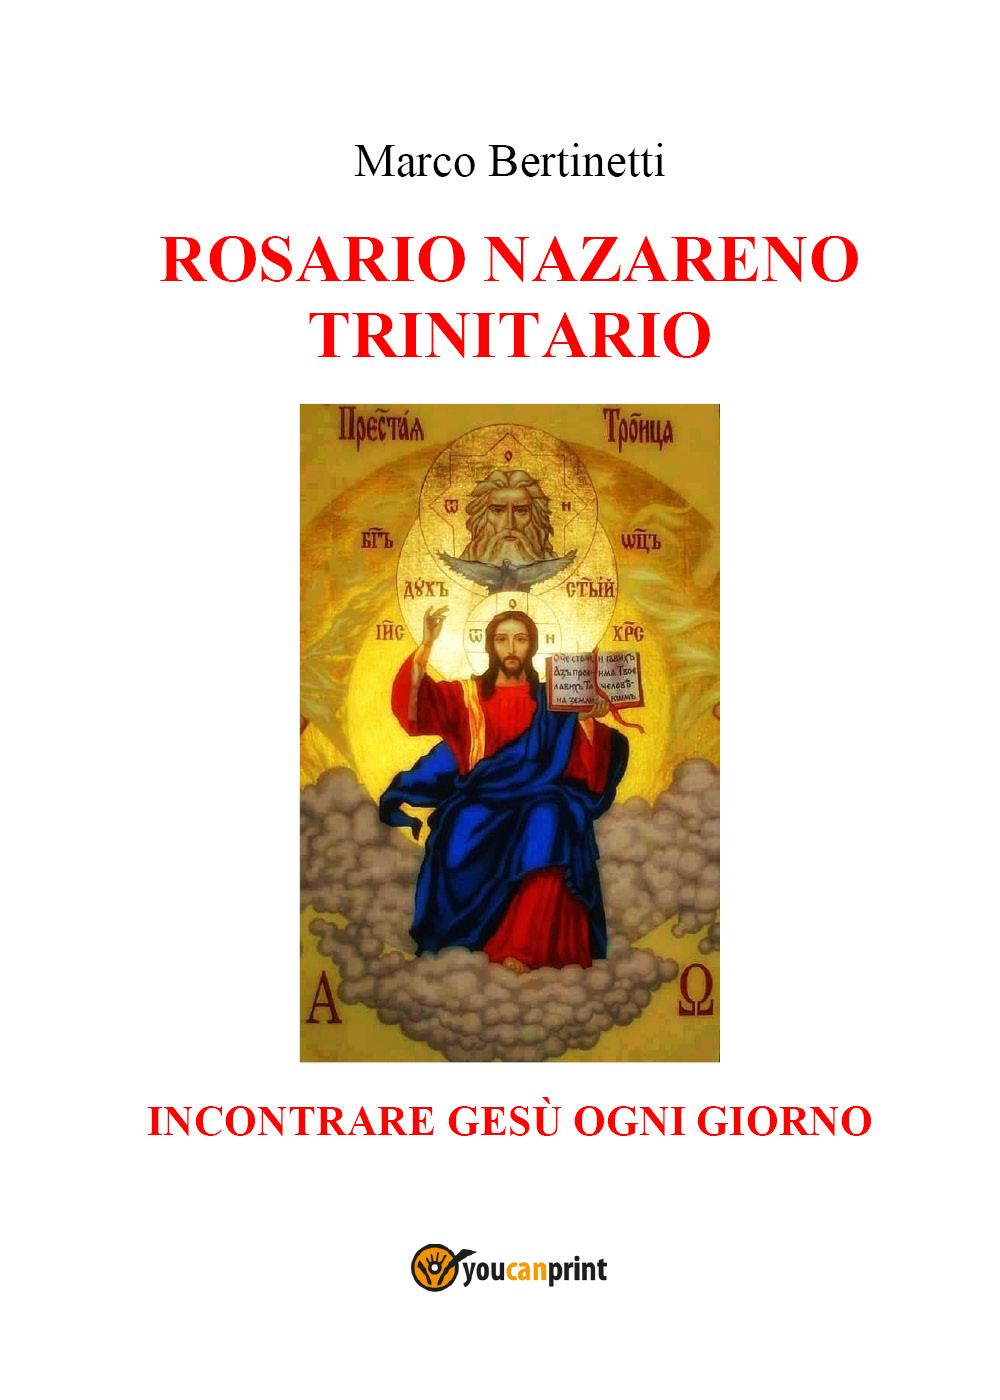 Rosario nazareno trinitario